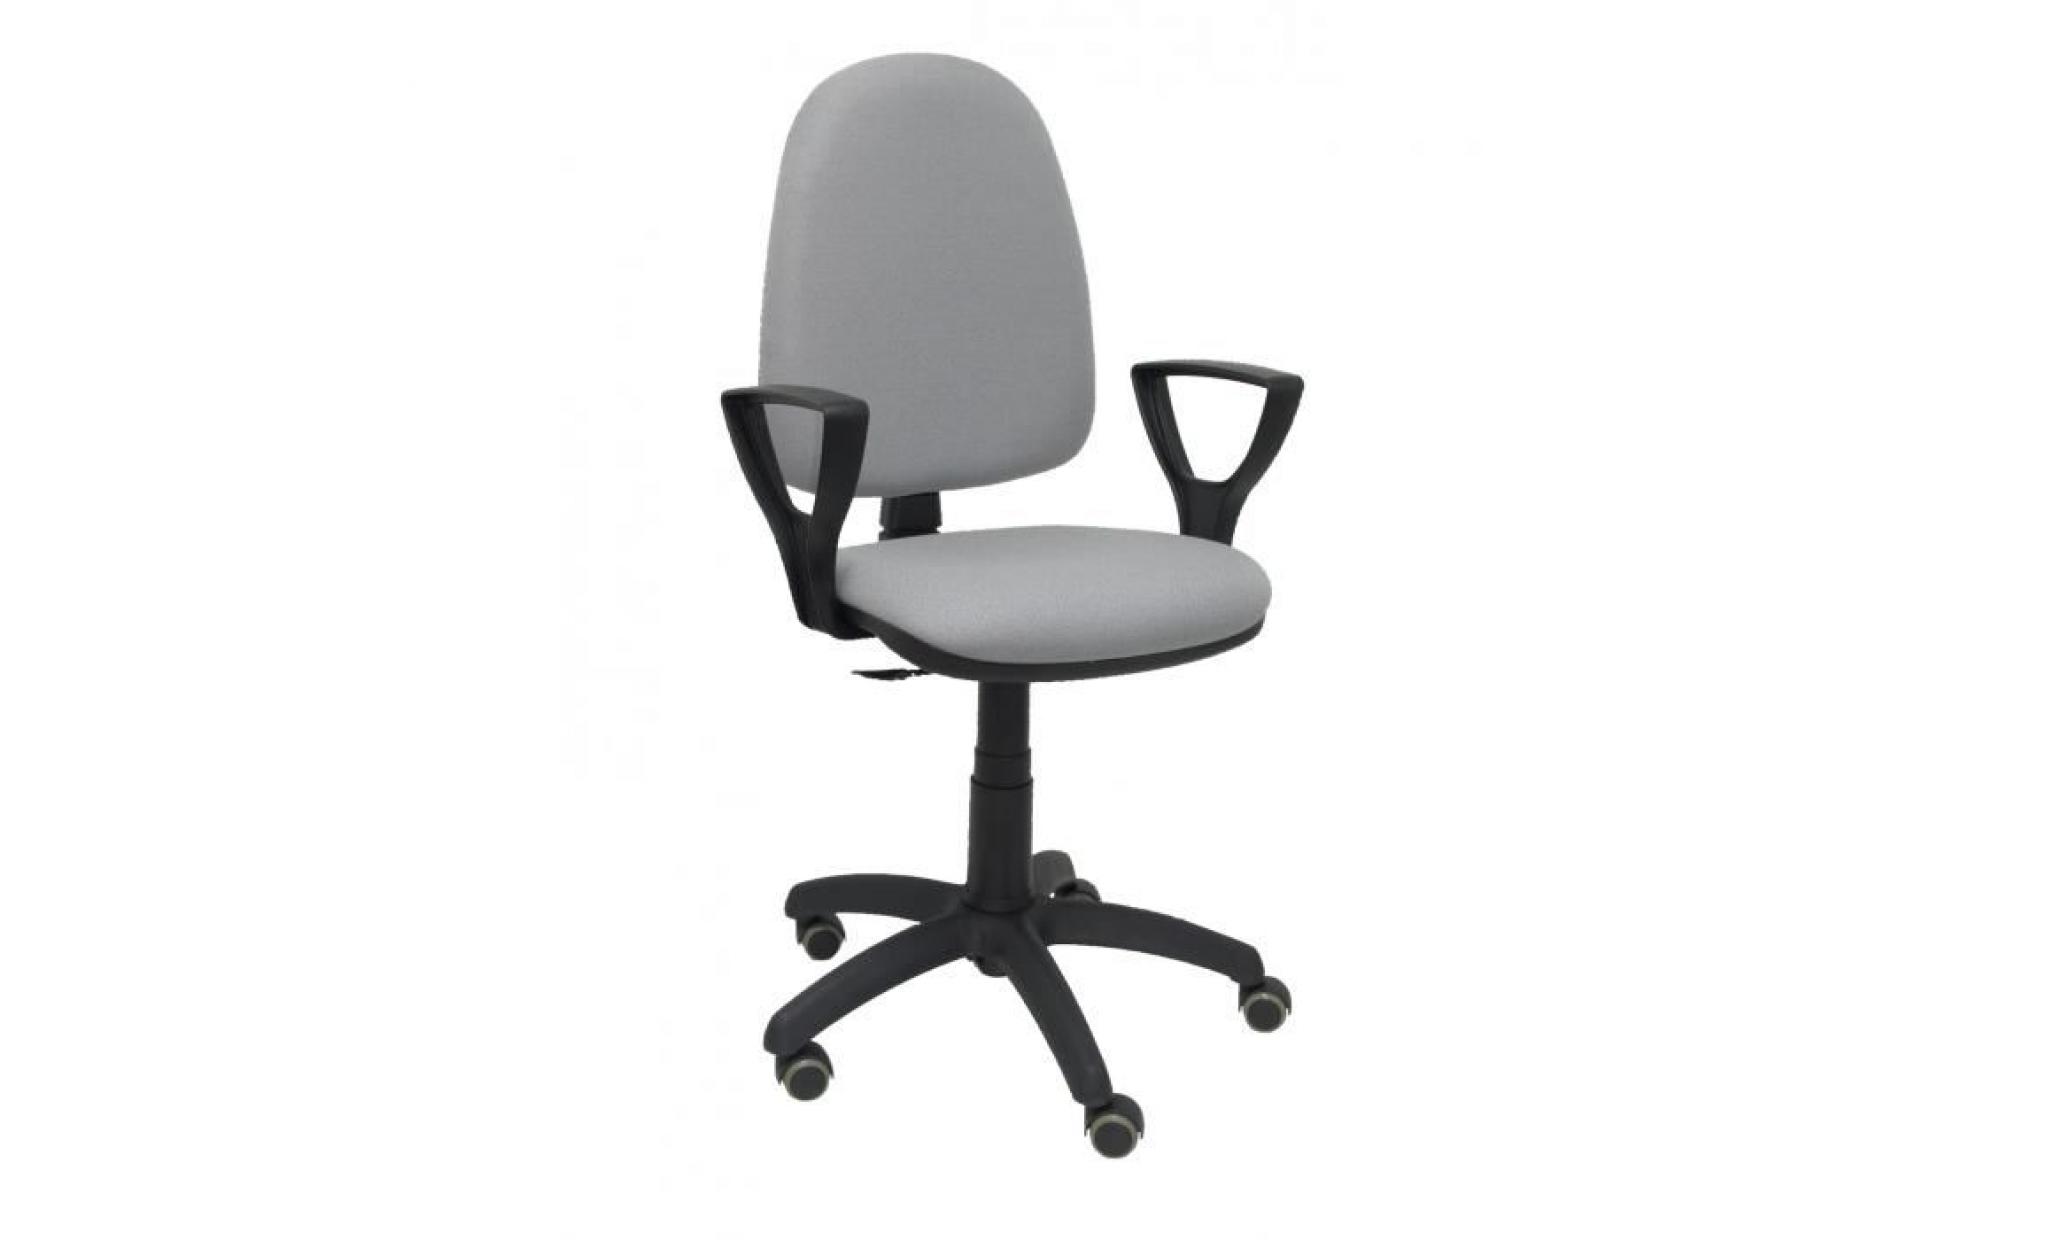 modèle 04cpbali40bgolfrp chaise de bureau ergonomique avec mécanisme de contact permanent, réglable en hauteur et roues de parquet